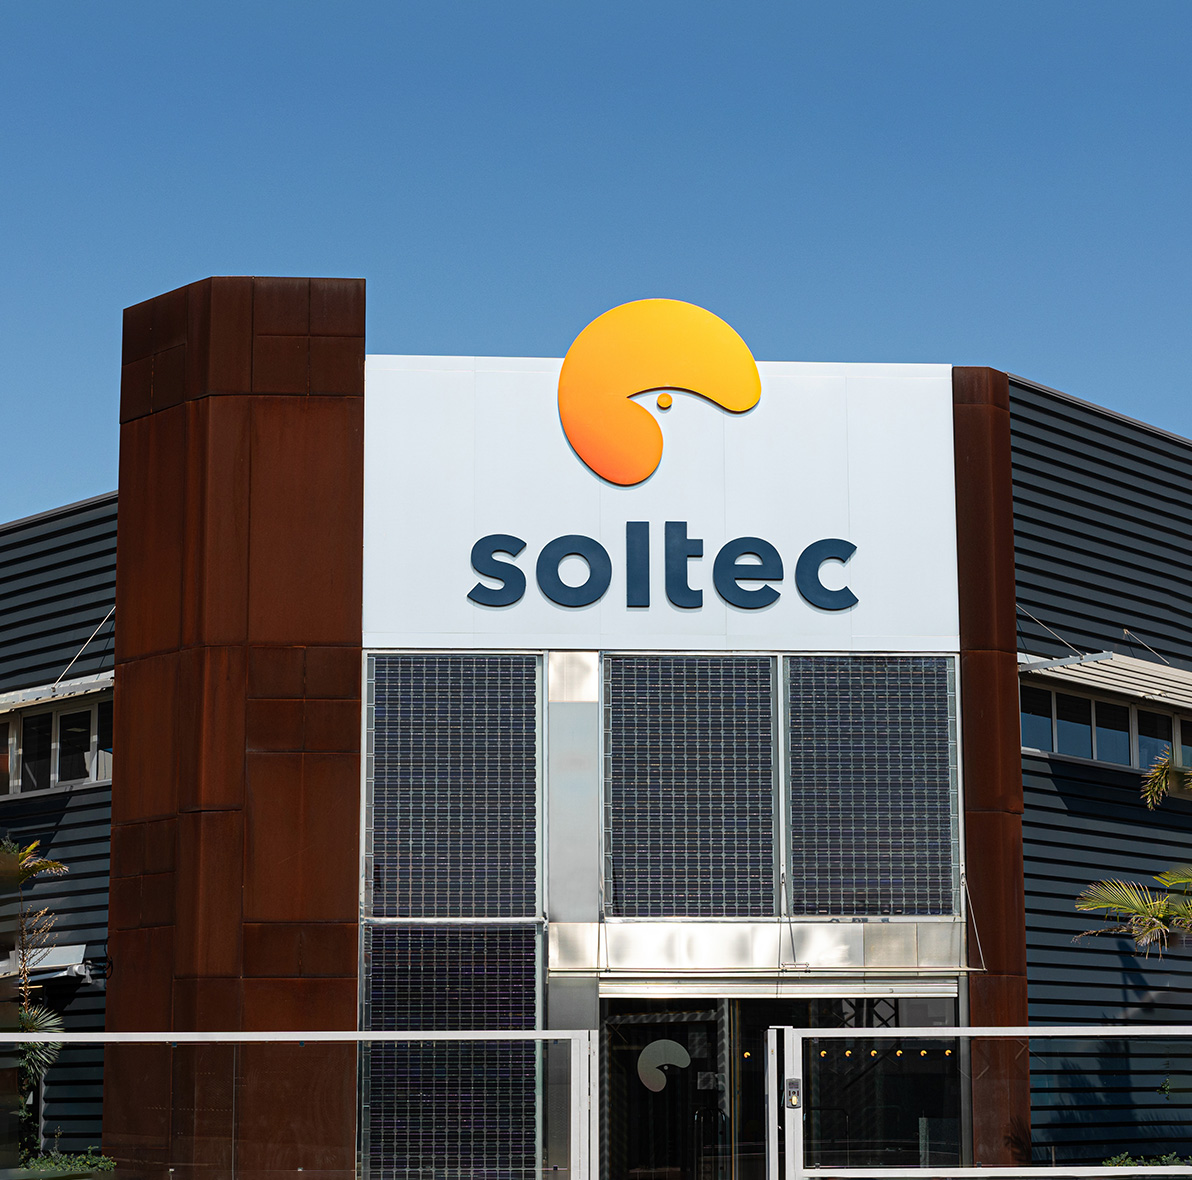 soltec.com